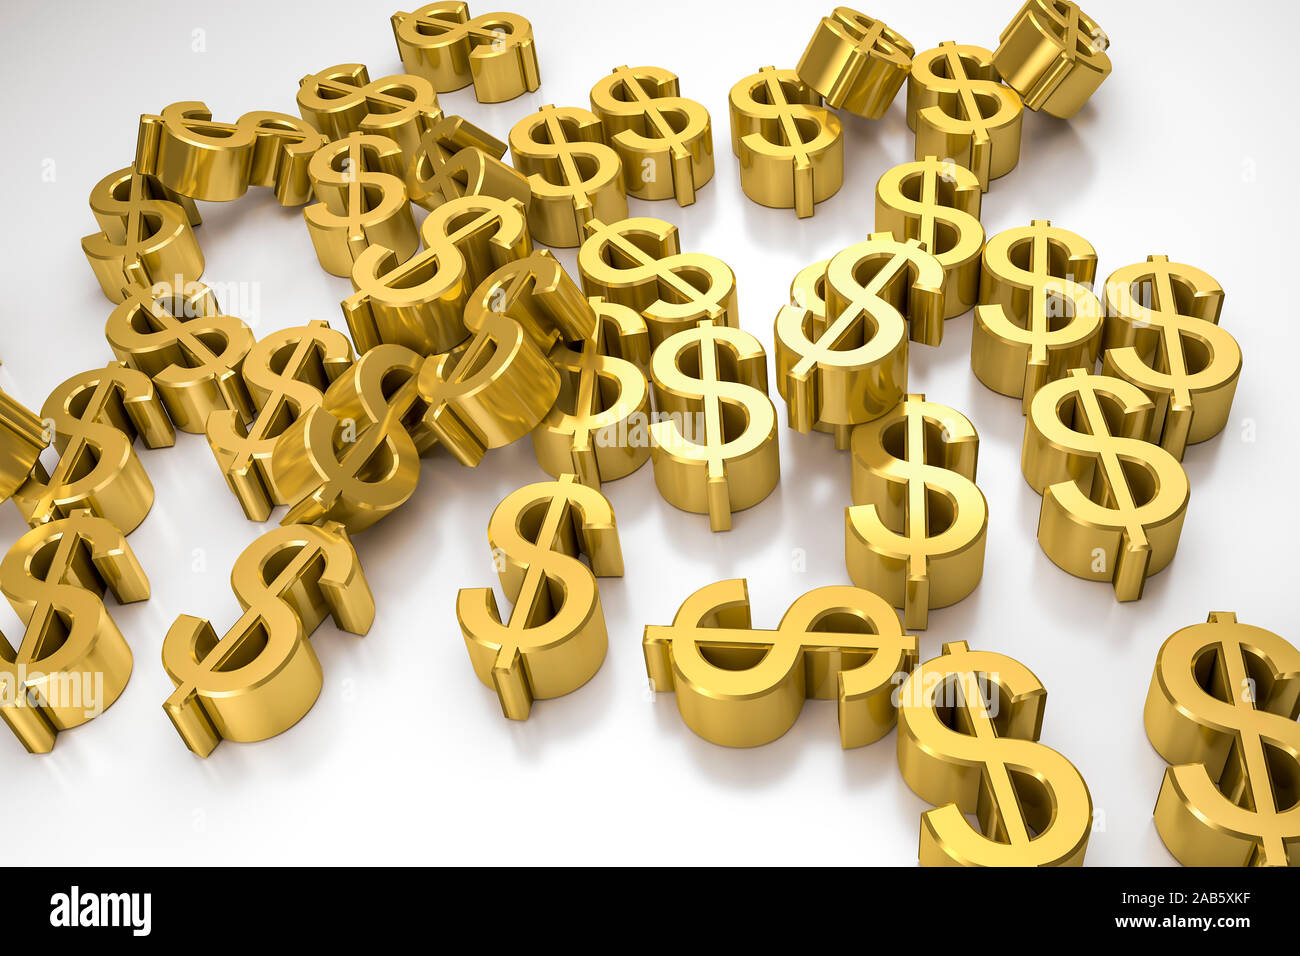 Viele goldene Dollar-Symbole vor weissem Hintergrund Stock Photo